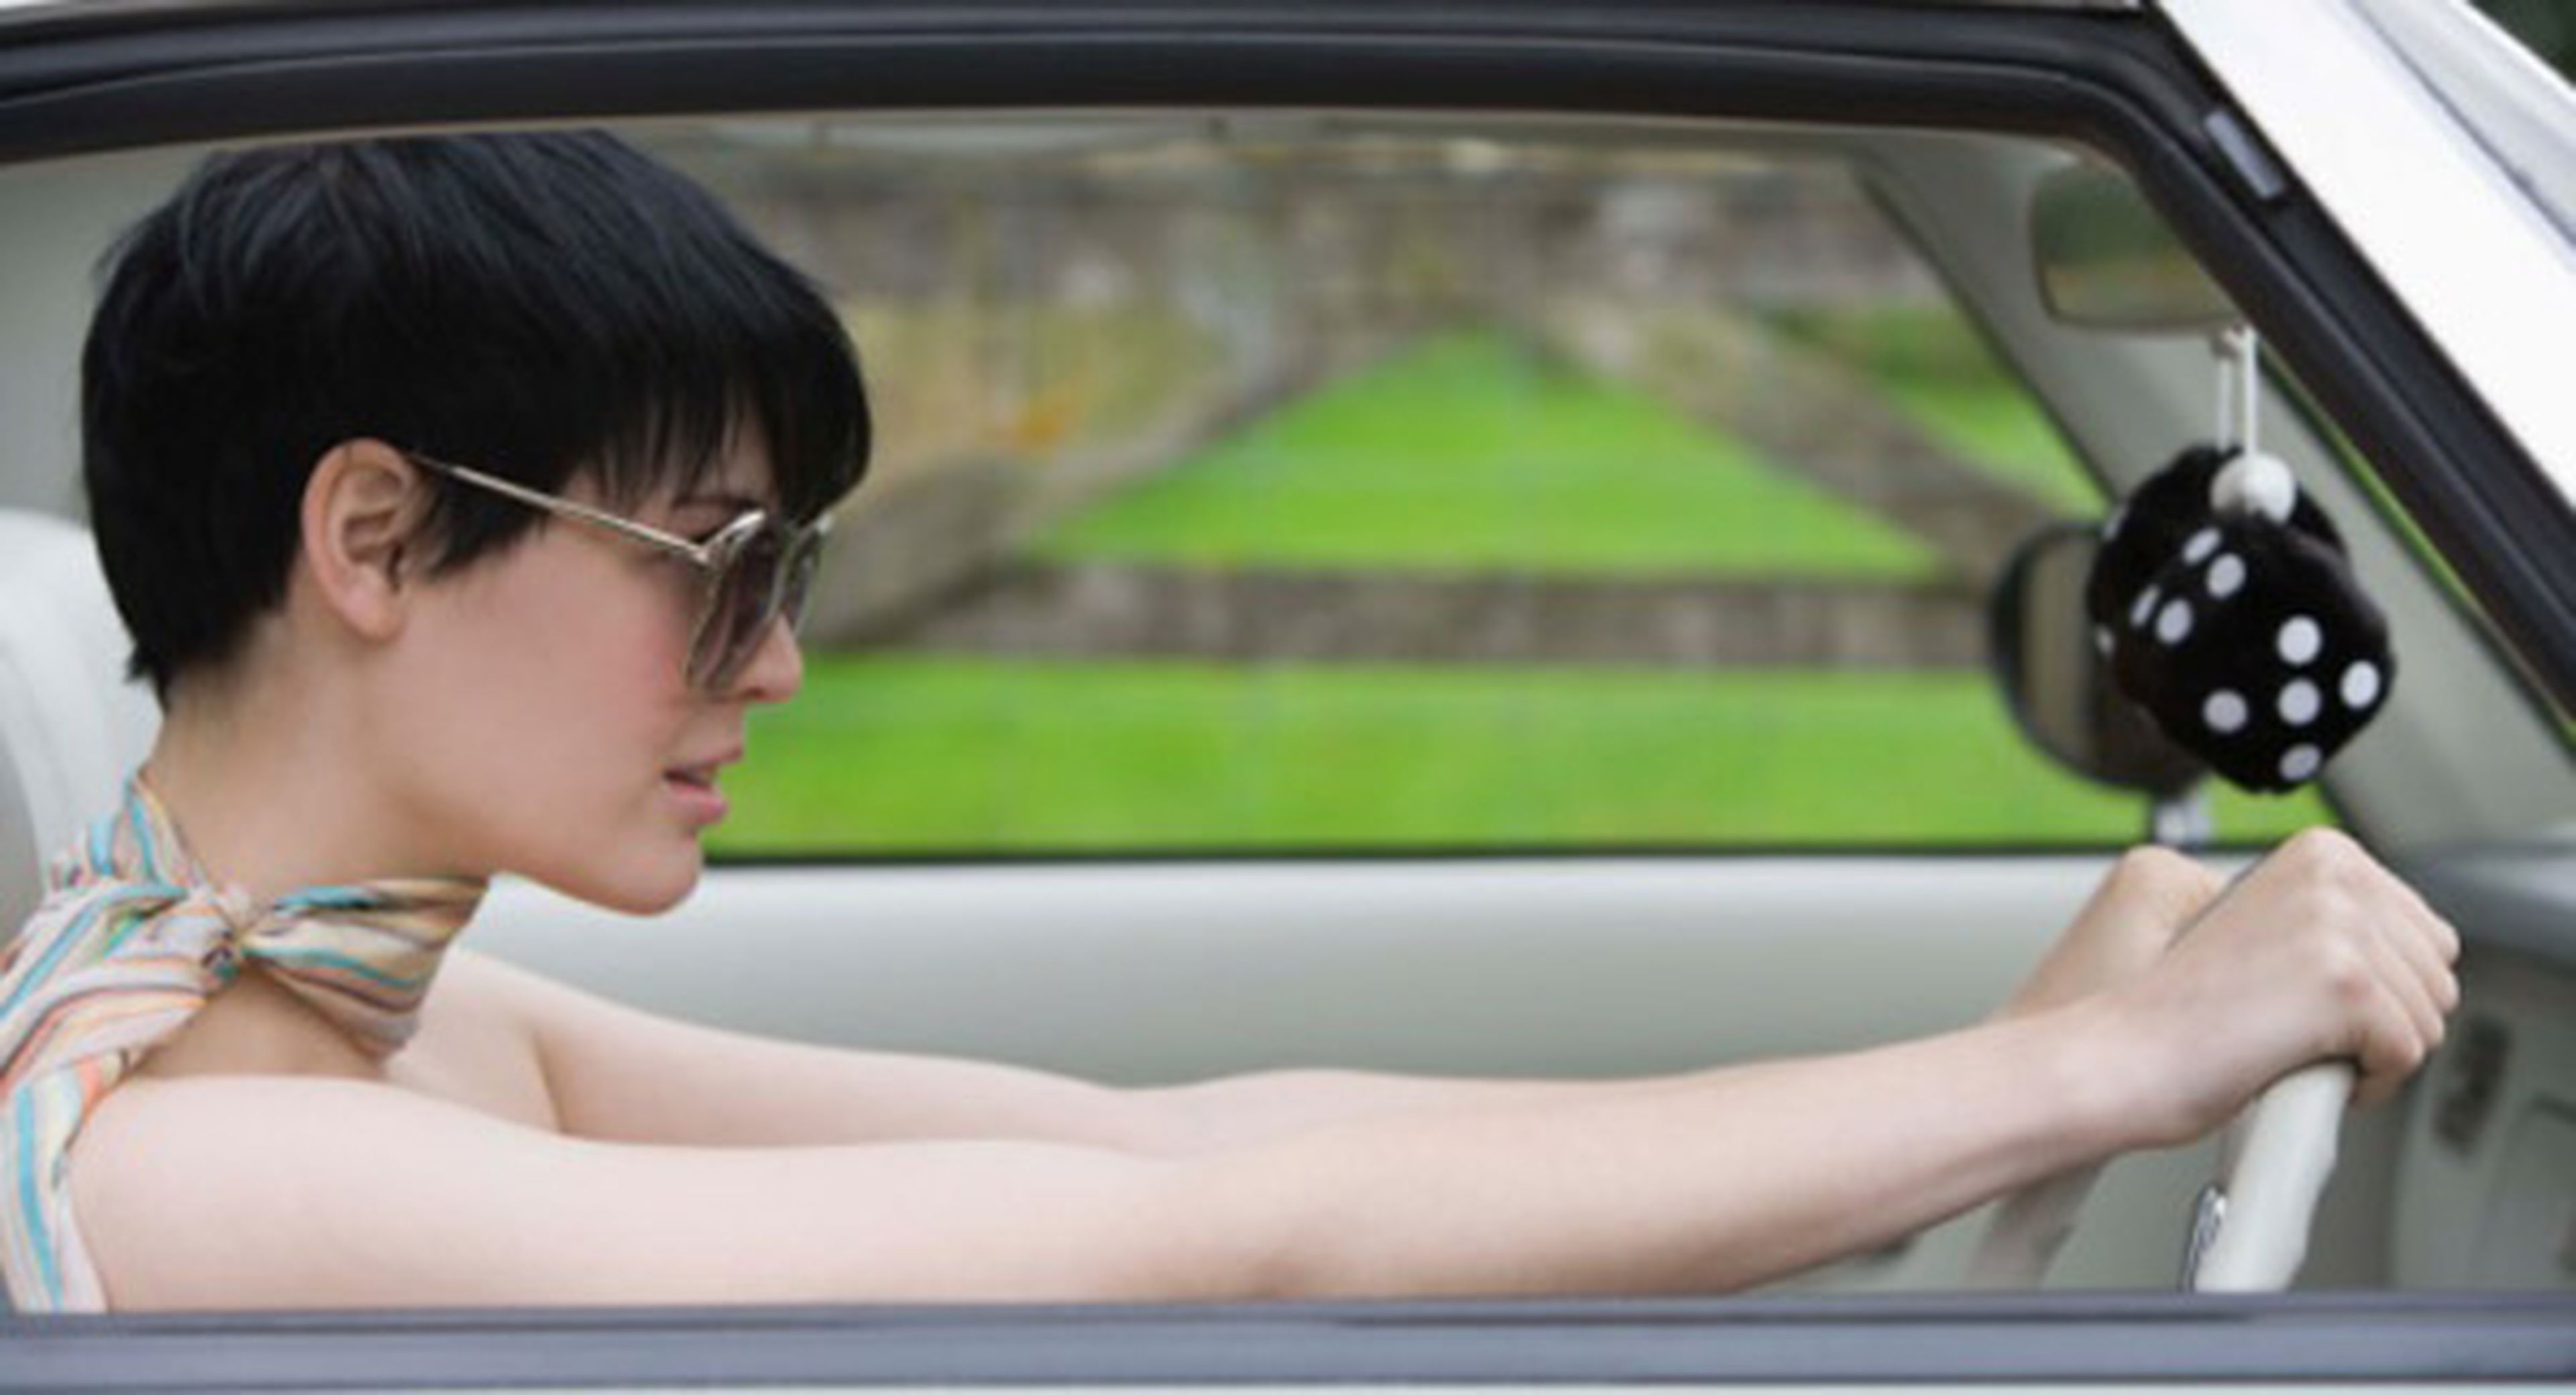 15 fotos que apoyan eso de que las mujeres conducen peor...